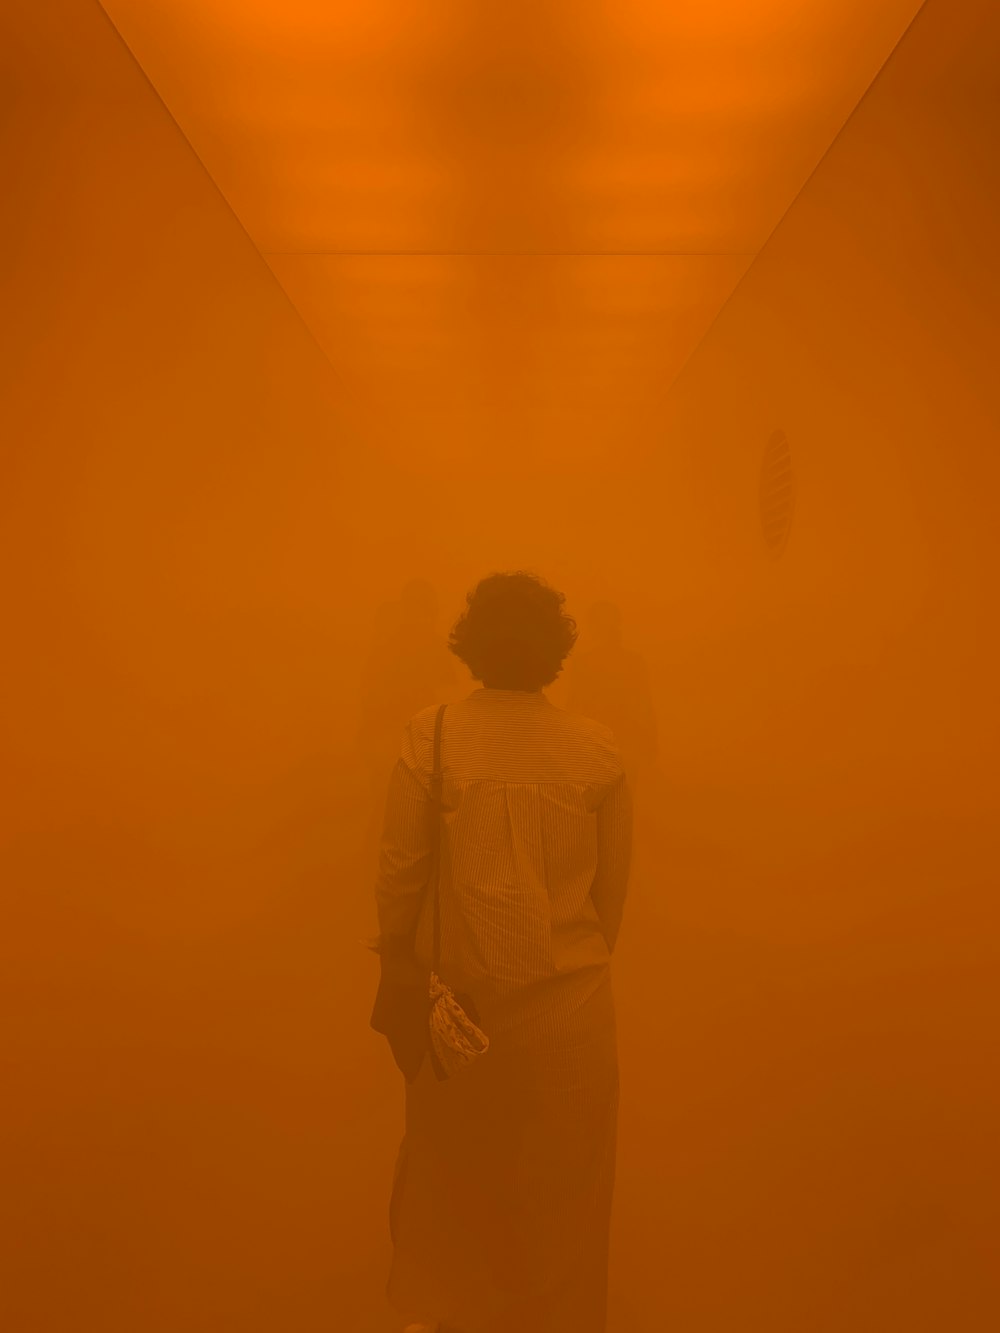 Photographie floue d’une personne à l’intérieur d’une chambre orange